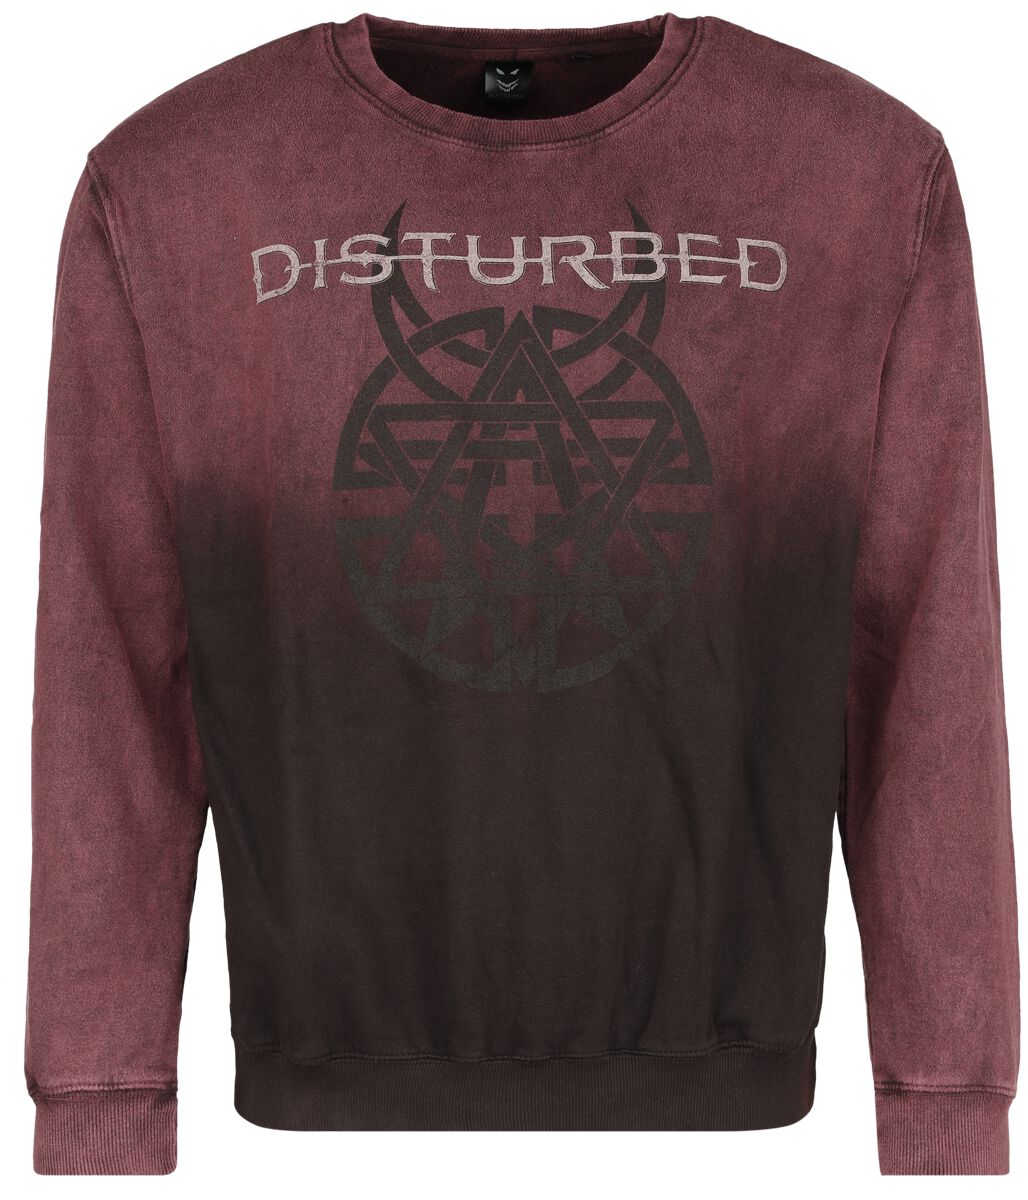 Disturbed Believe Symbol Sweatshirt dunkelrot in XXL